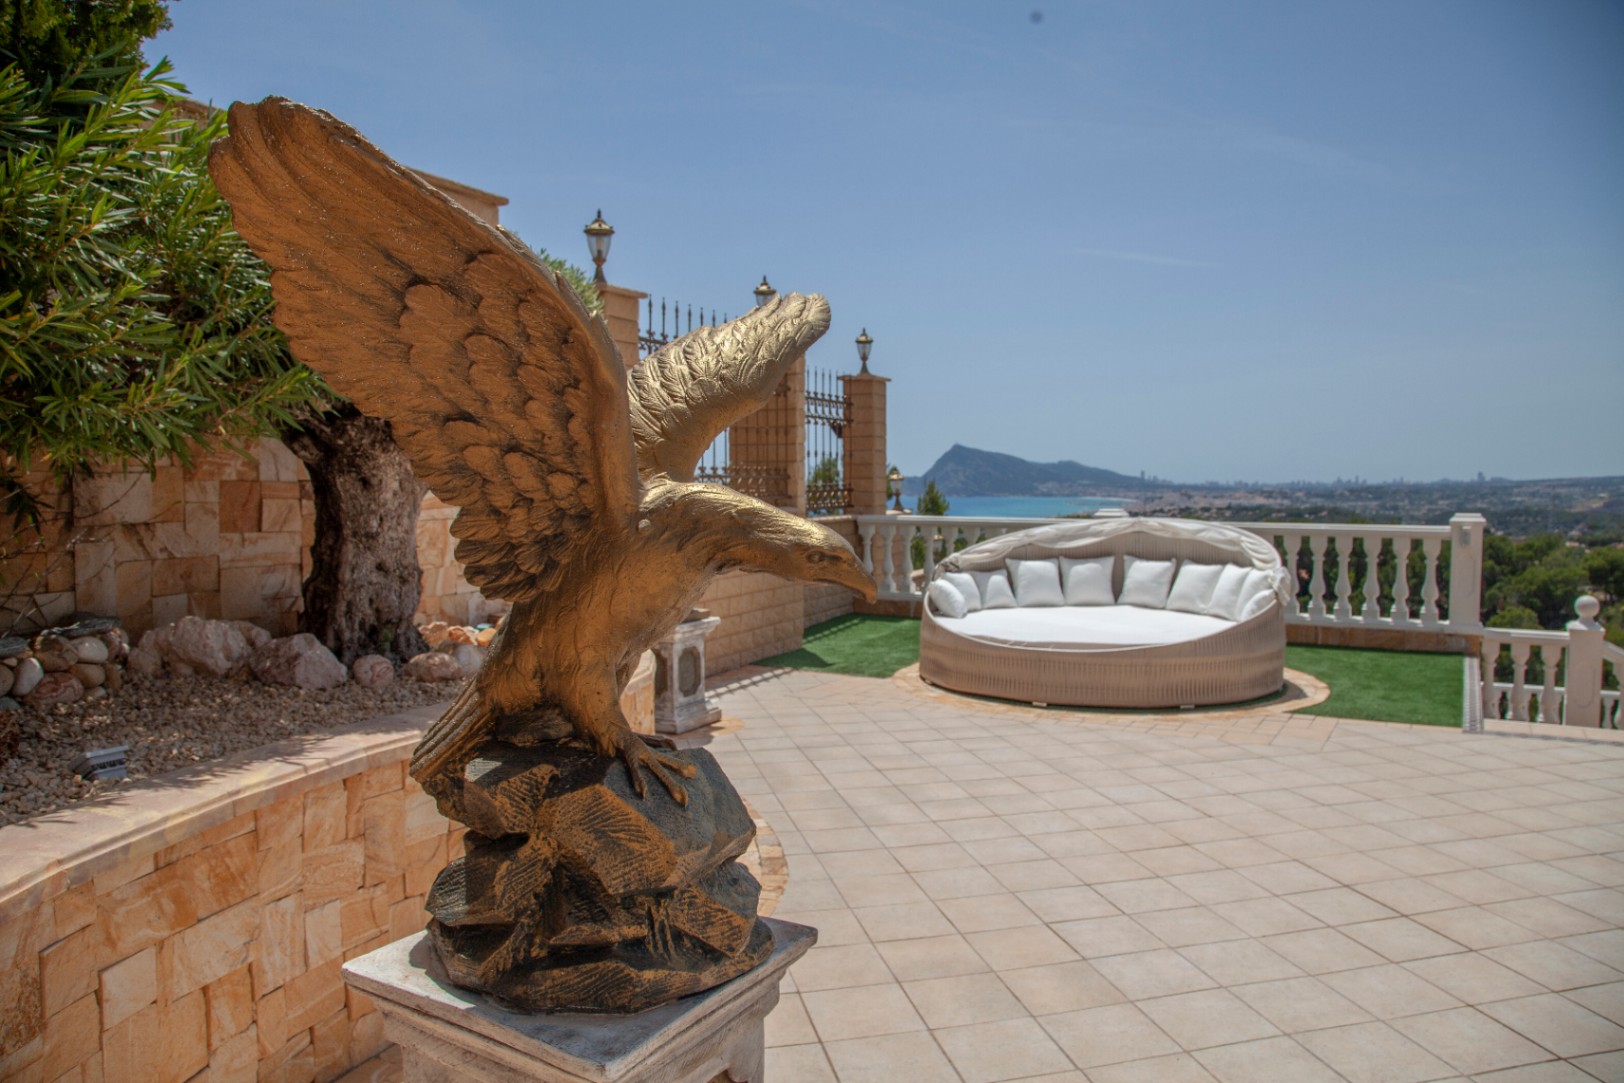 Продается изысканный комплекс, состоящий из двух величественных вилл, в живописном городке Альтеа, оазисе спокойствия на великолепном побережье Коста Бланка, всего в 60 км от аэропорта Аликанте